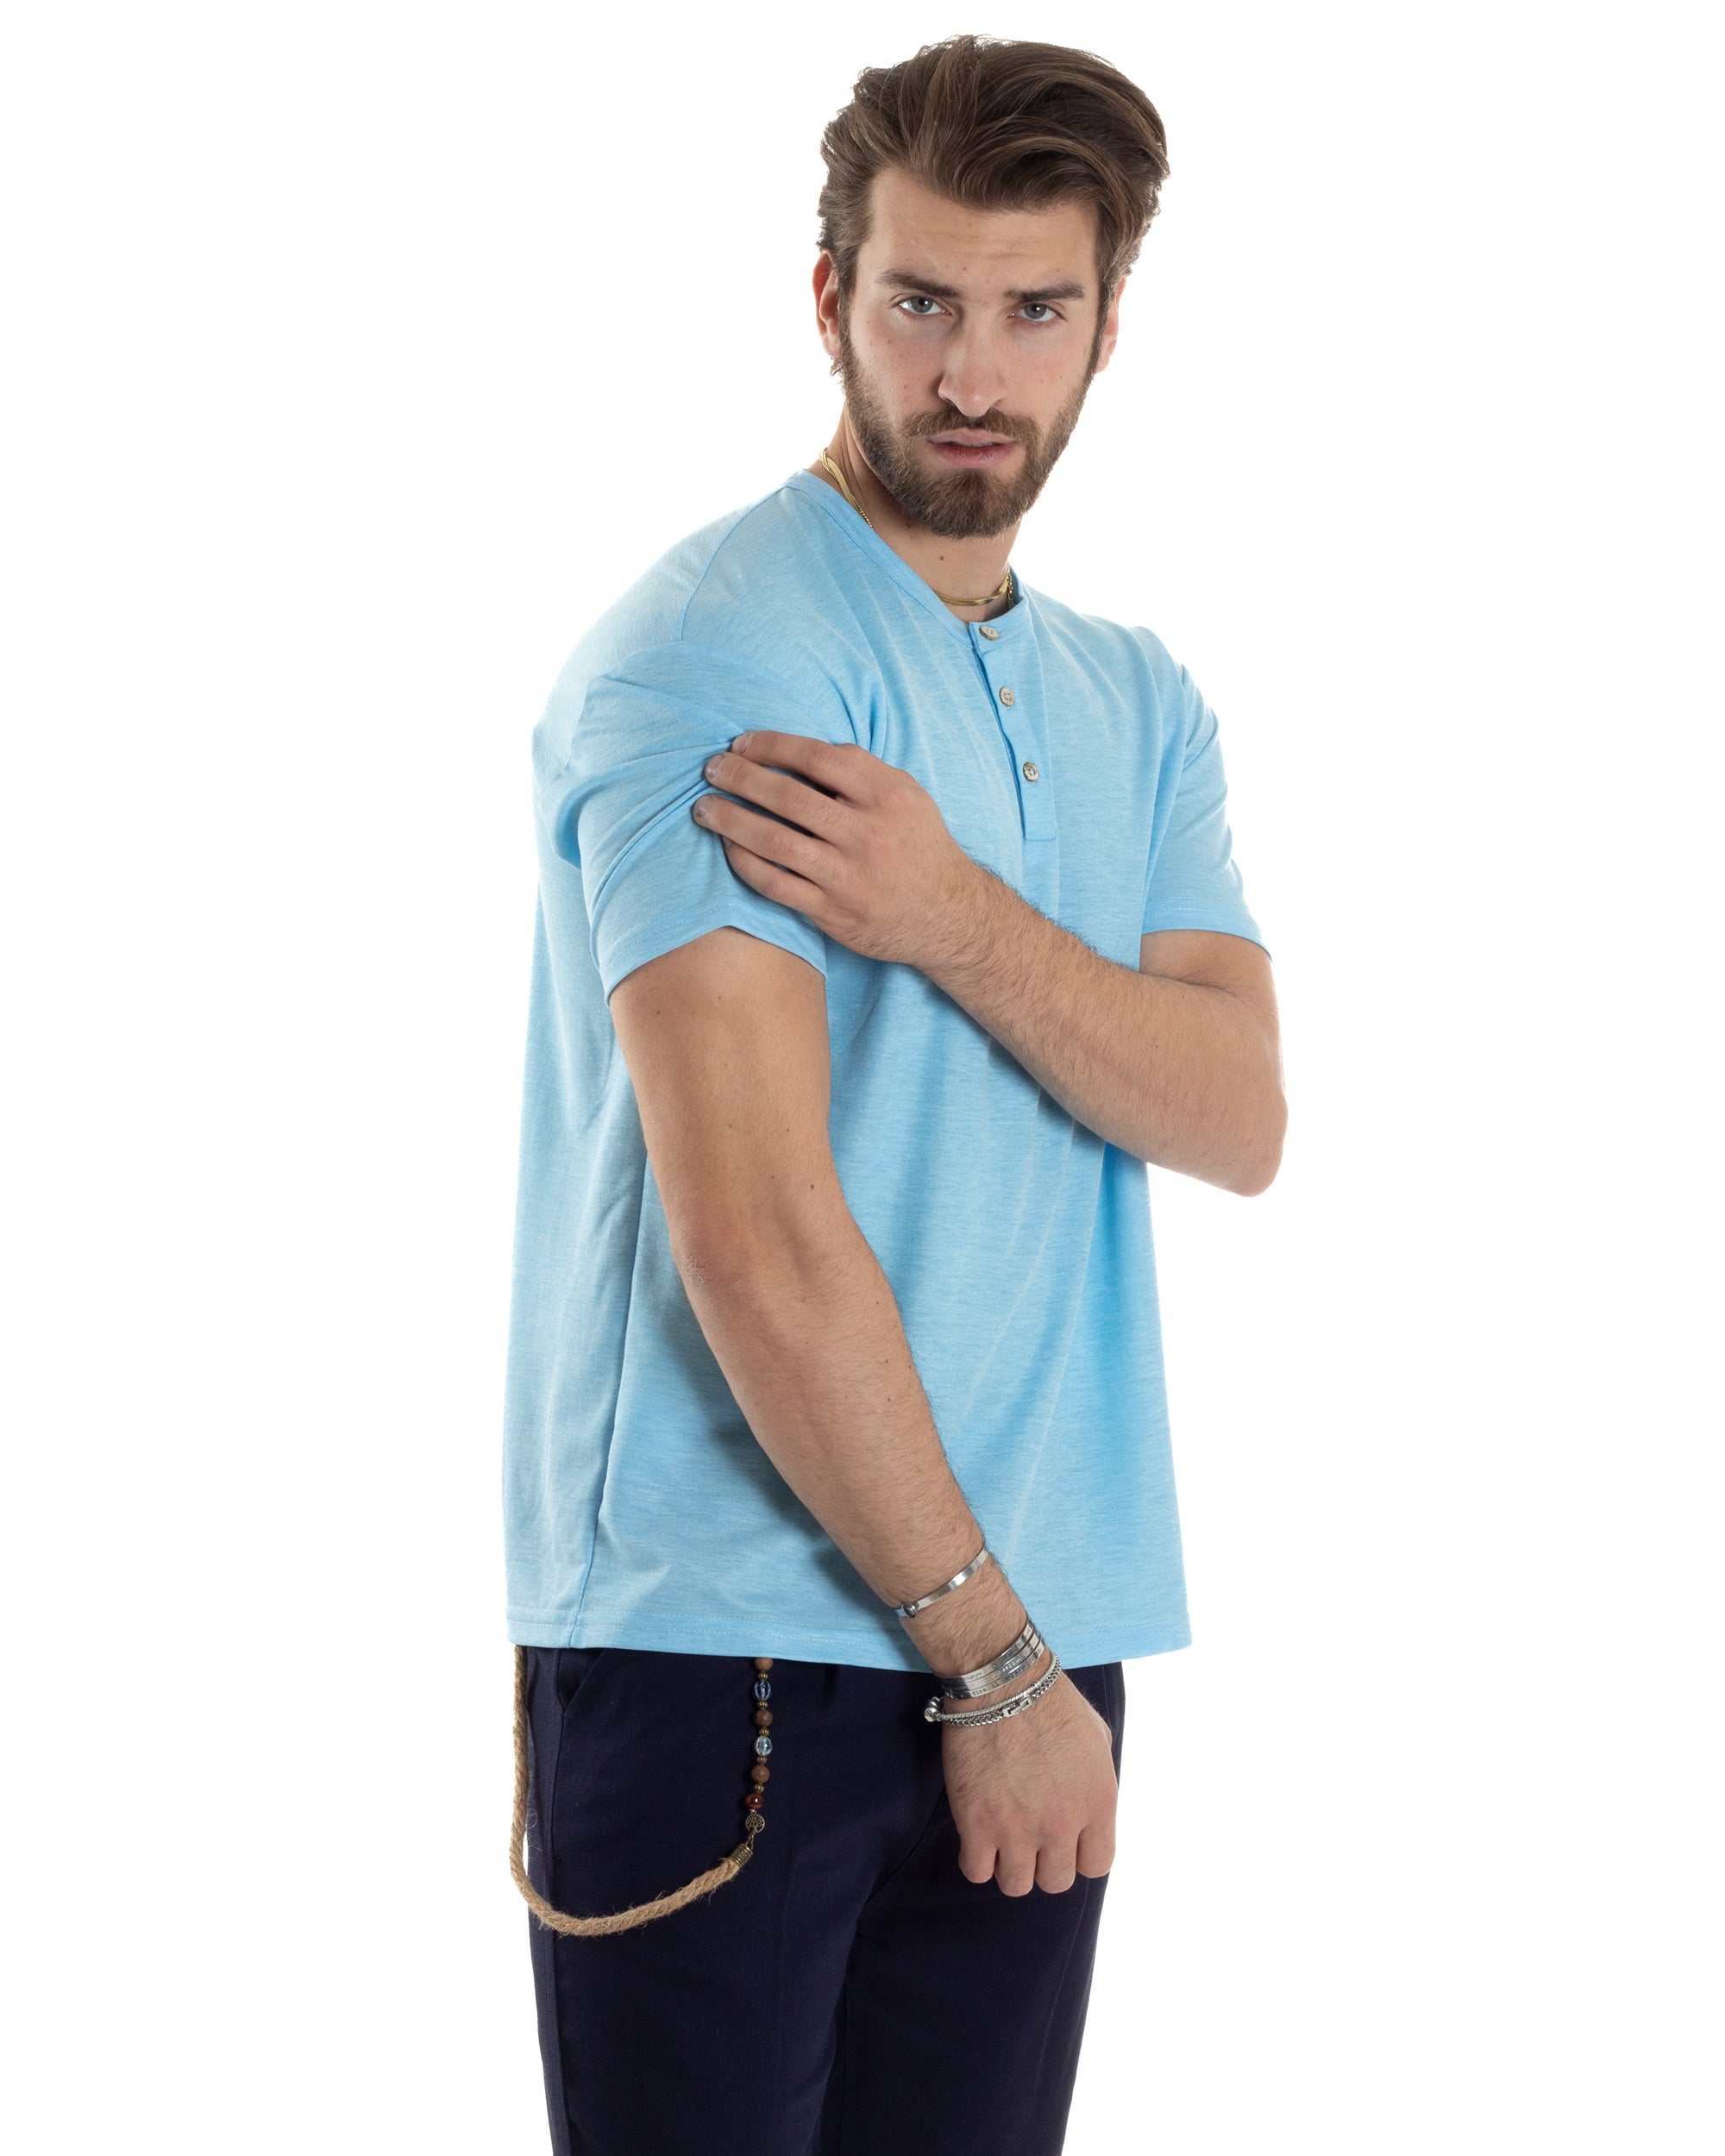 T-shirt Uomo Manica Corta Viscosa Collo Serafino Maglia Con Bottoni Casual Azzurro GIOSAL-TS3037A